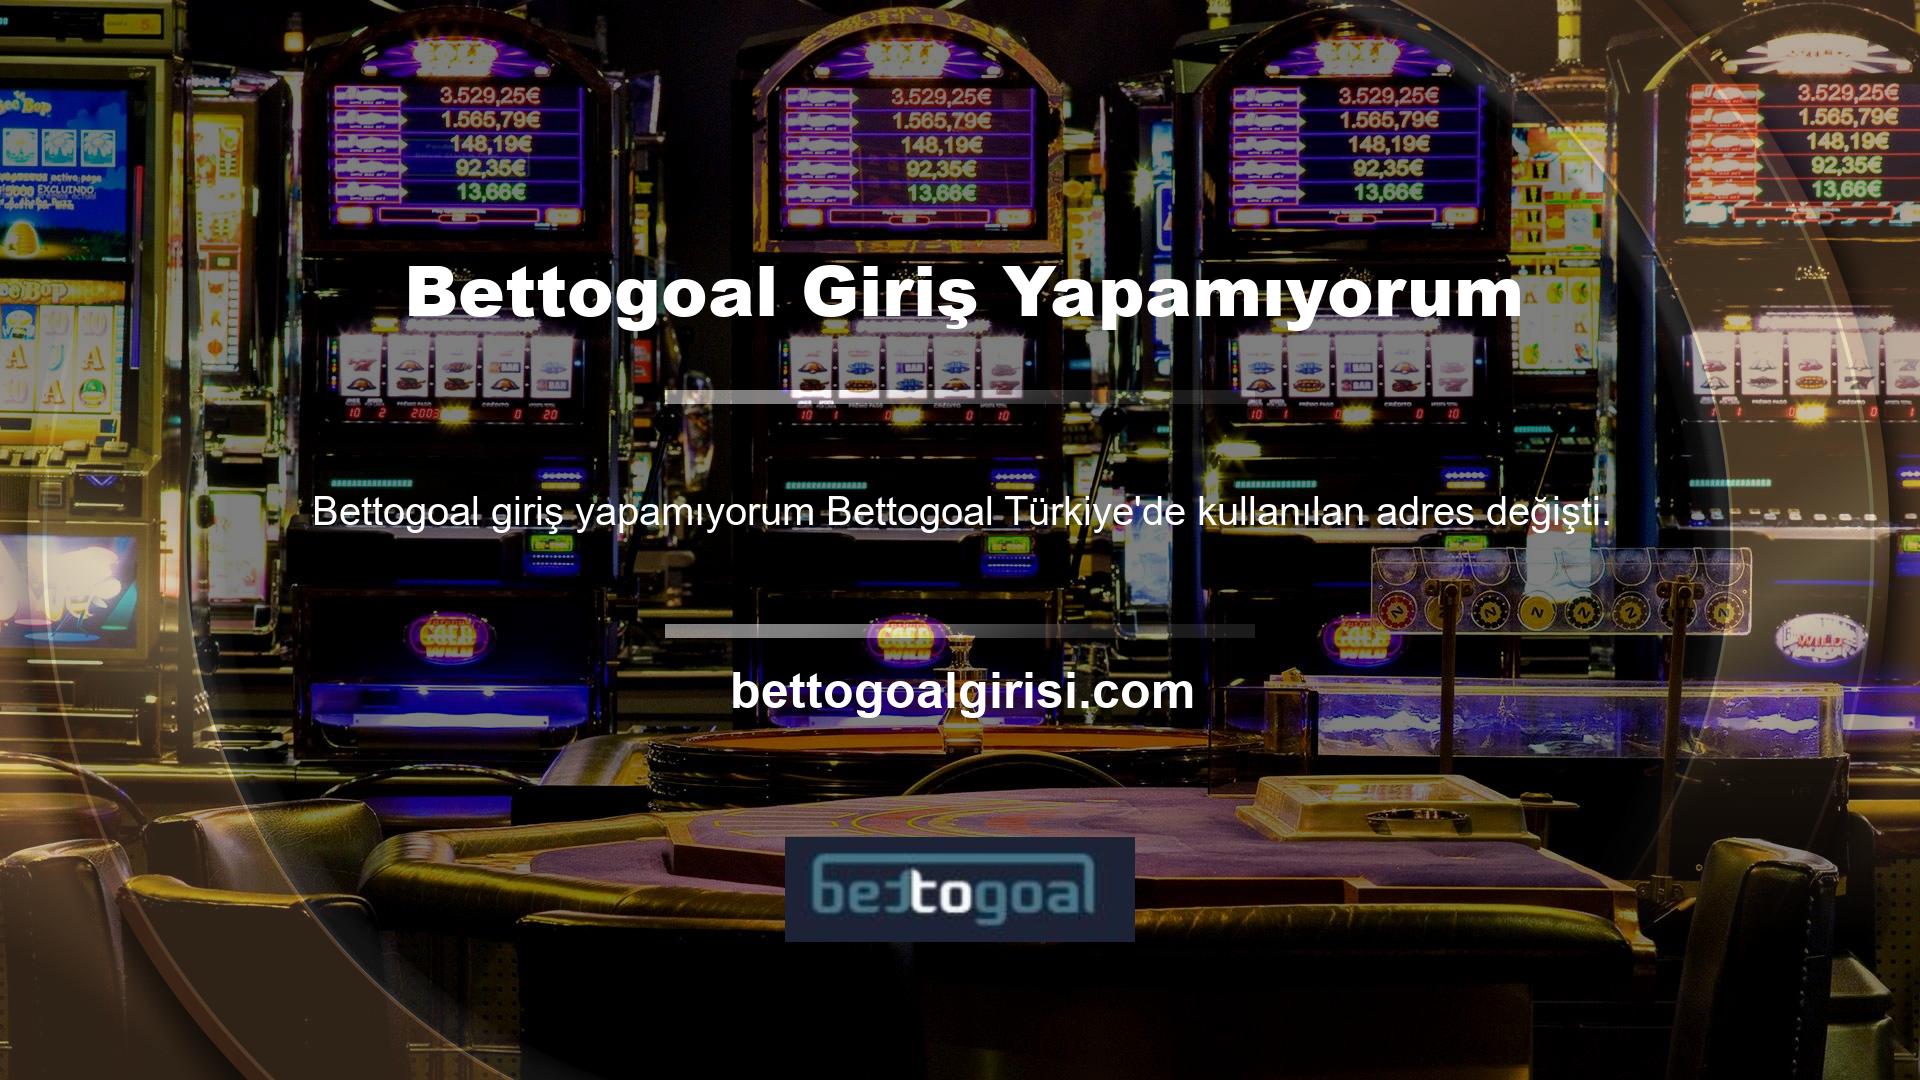 Bettogoal yeni adresine ne oldu Yeni Bettogoal giriş adresi bu sitenin Türkiye'de ve internette aktif olarak kullandığı adrestir